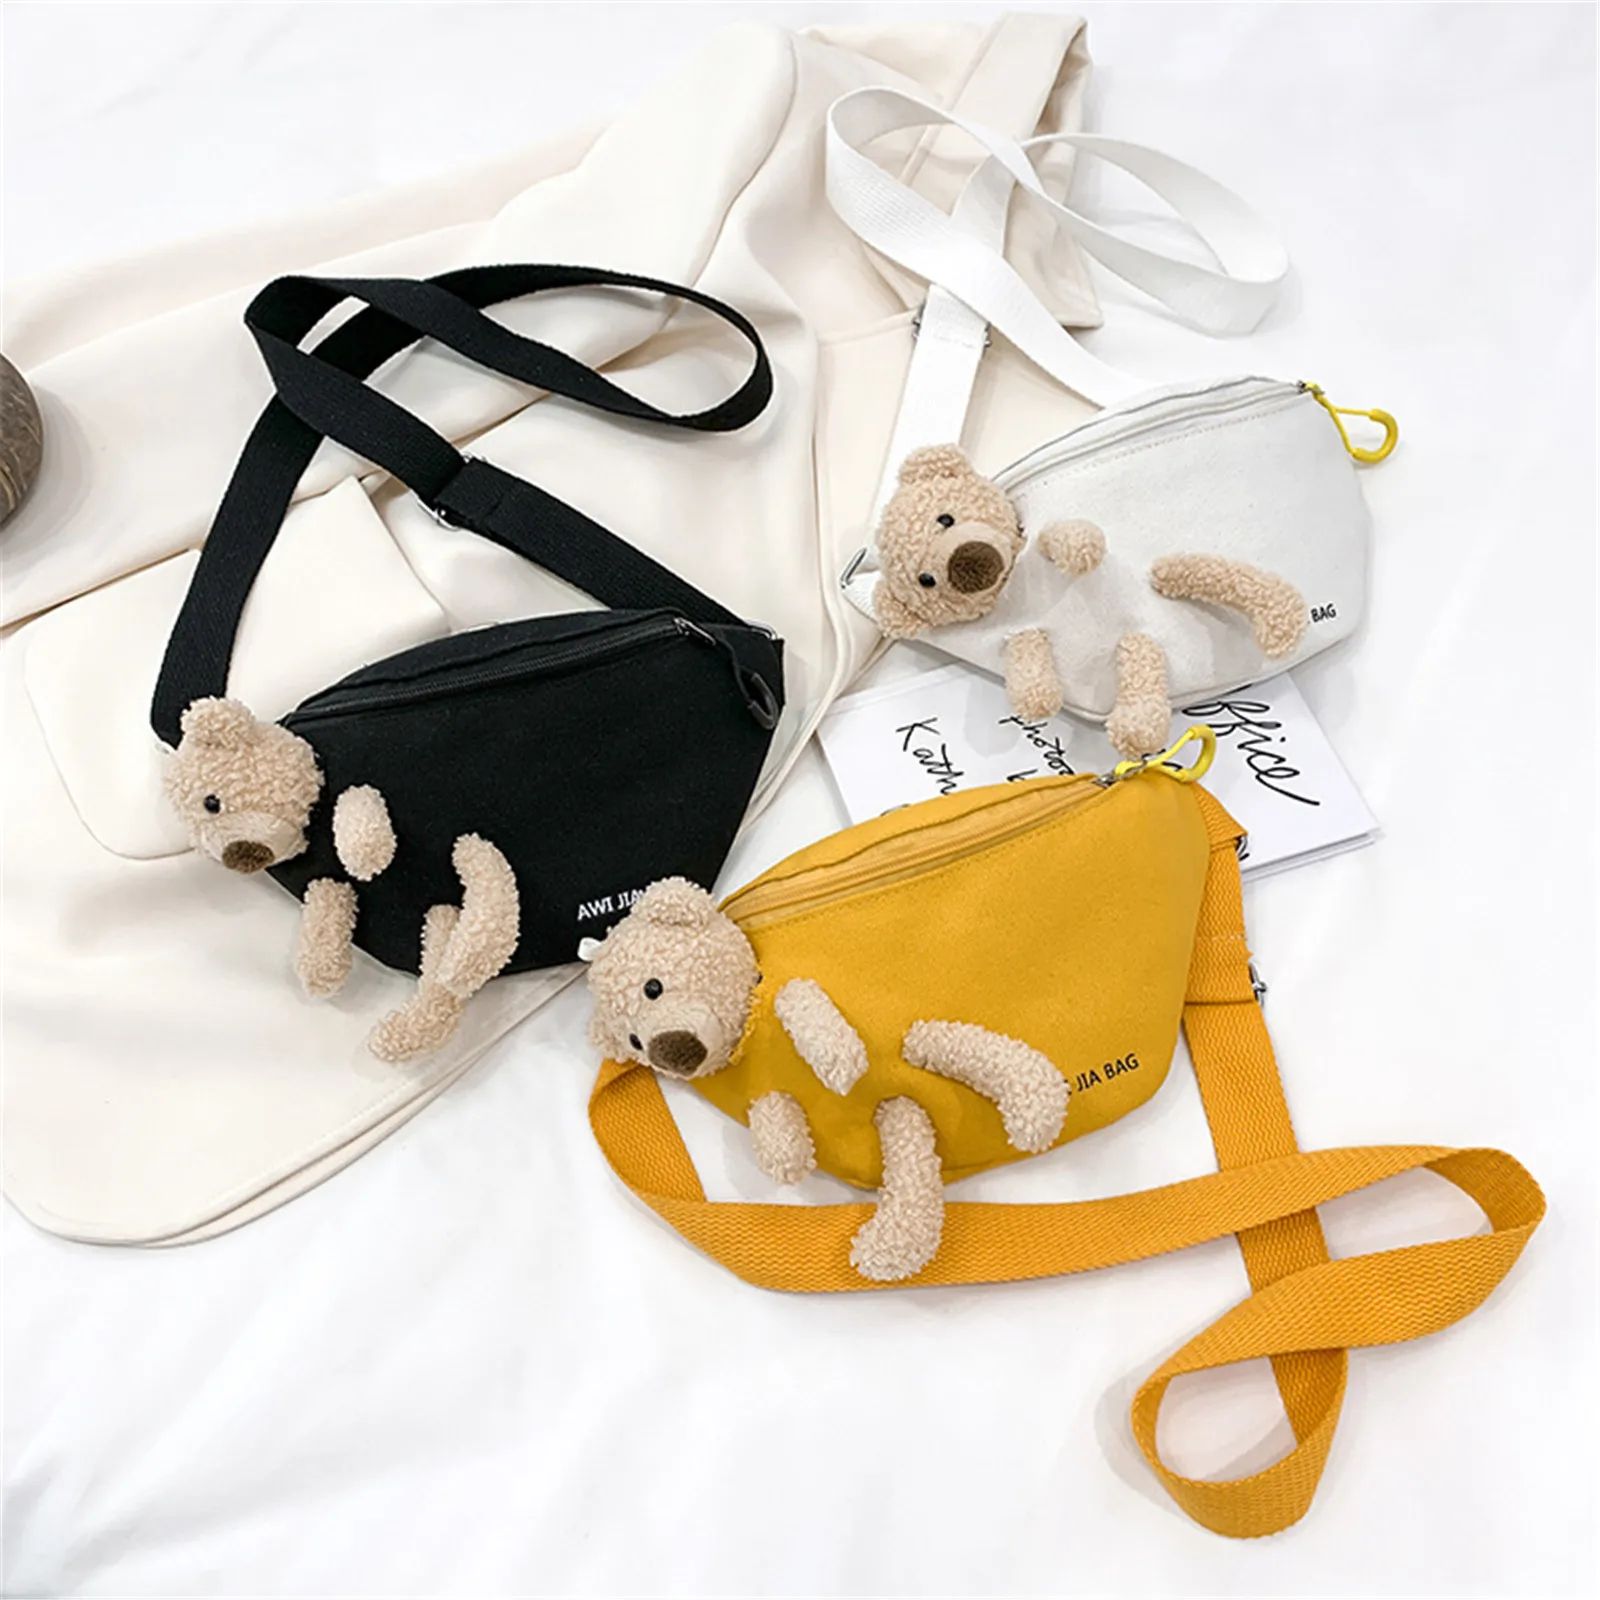 Sac banane monochrome pour femme, sac à main de hanche, ceinture en toile, sac à bandoulière design, jaune, noir, ours mignon, nouveau